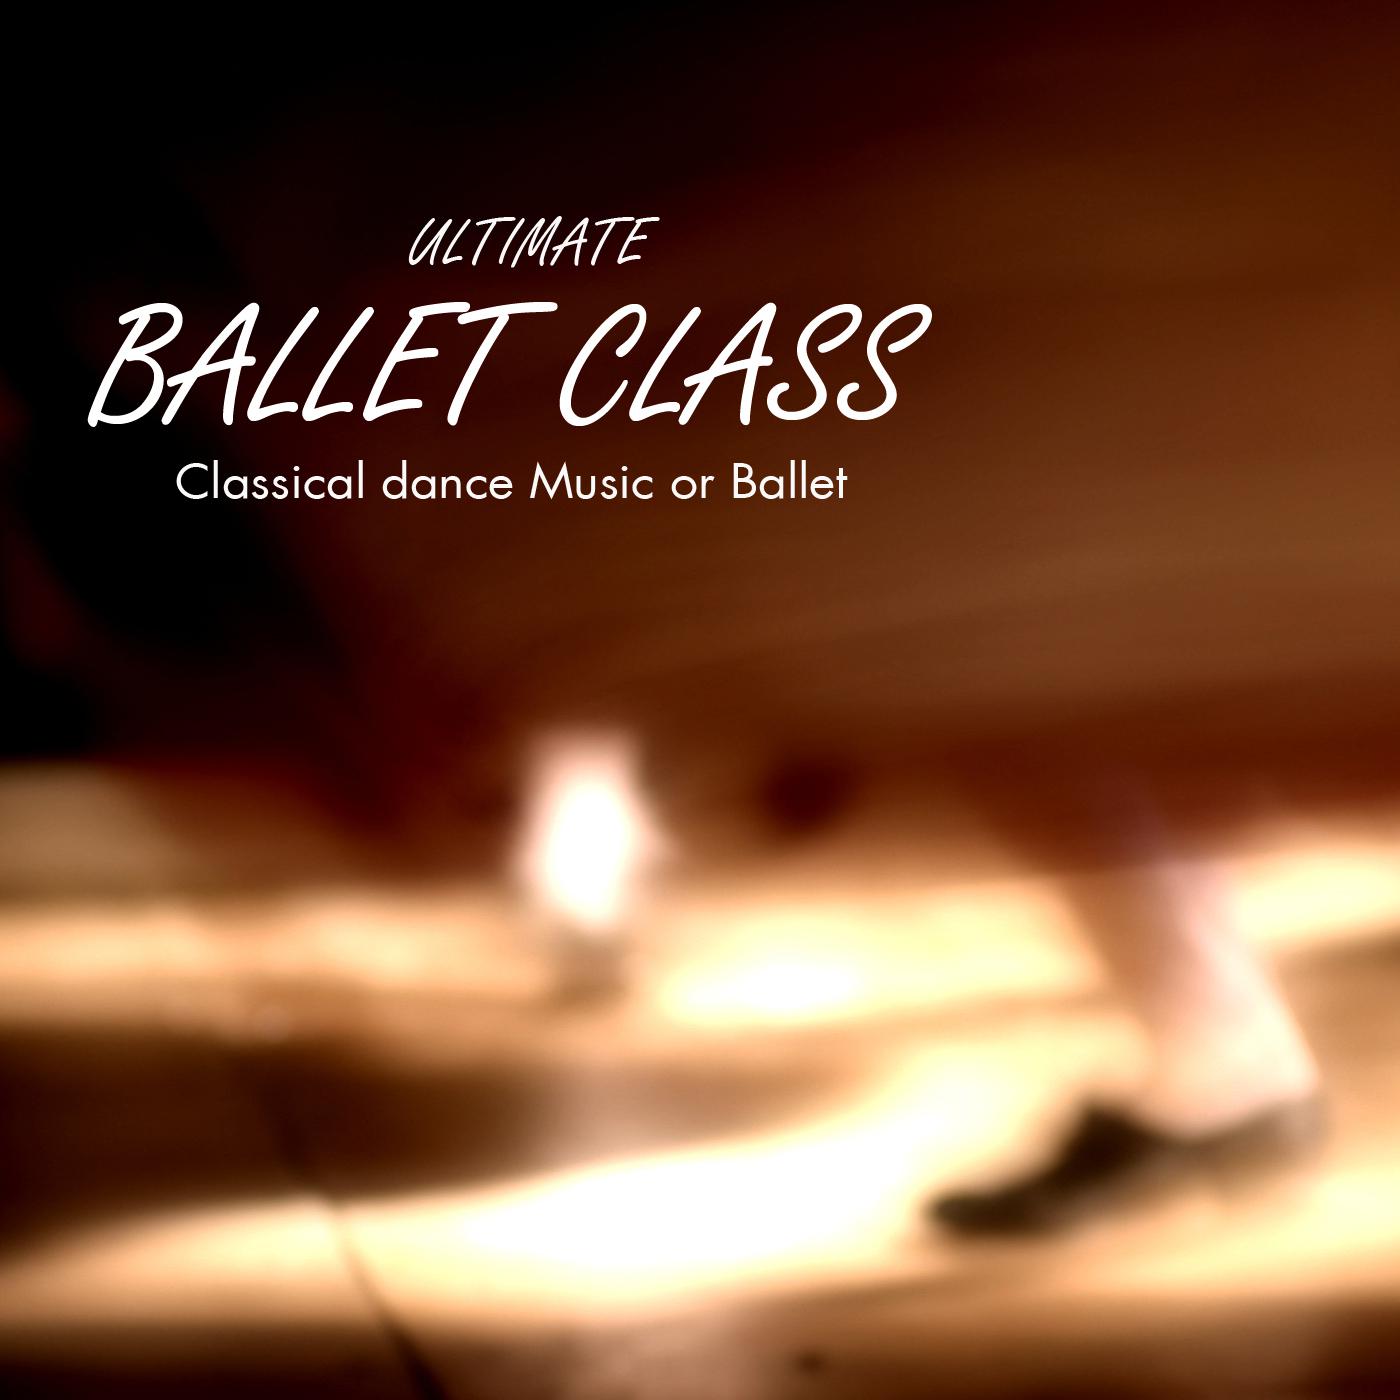 Ultimate Ballet Class Music - Classical Dance Music for Dance Schools, Dance Lessons, Dance Classes, Ballet Positions, Ballet Moves and Ballet Dance Steps 100% Music for Ballet Class